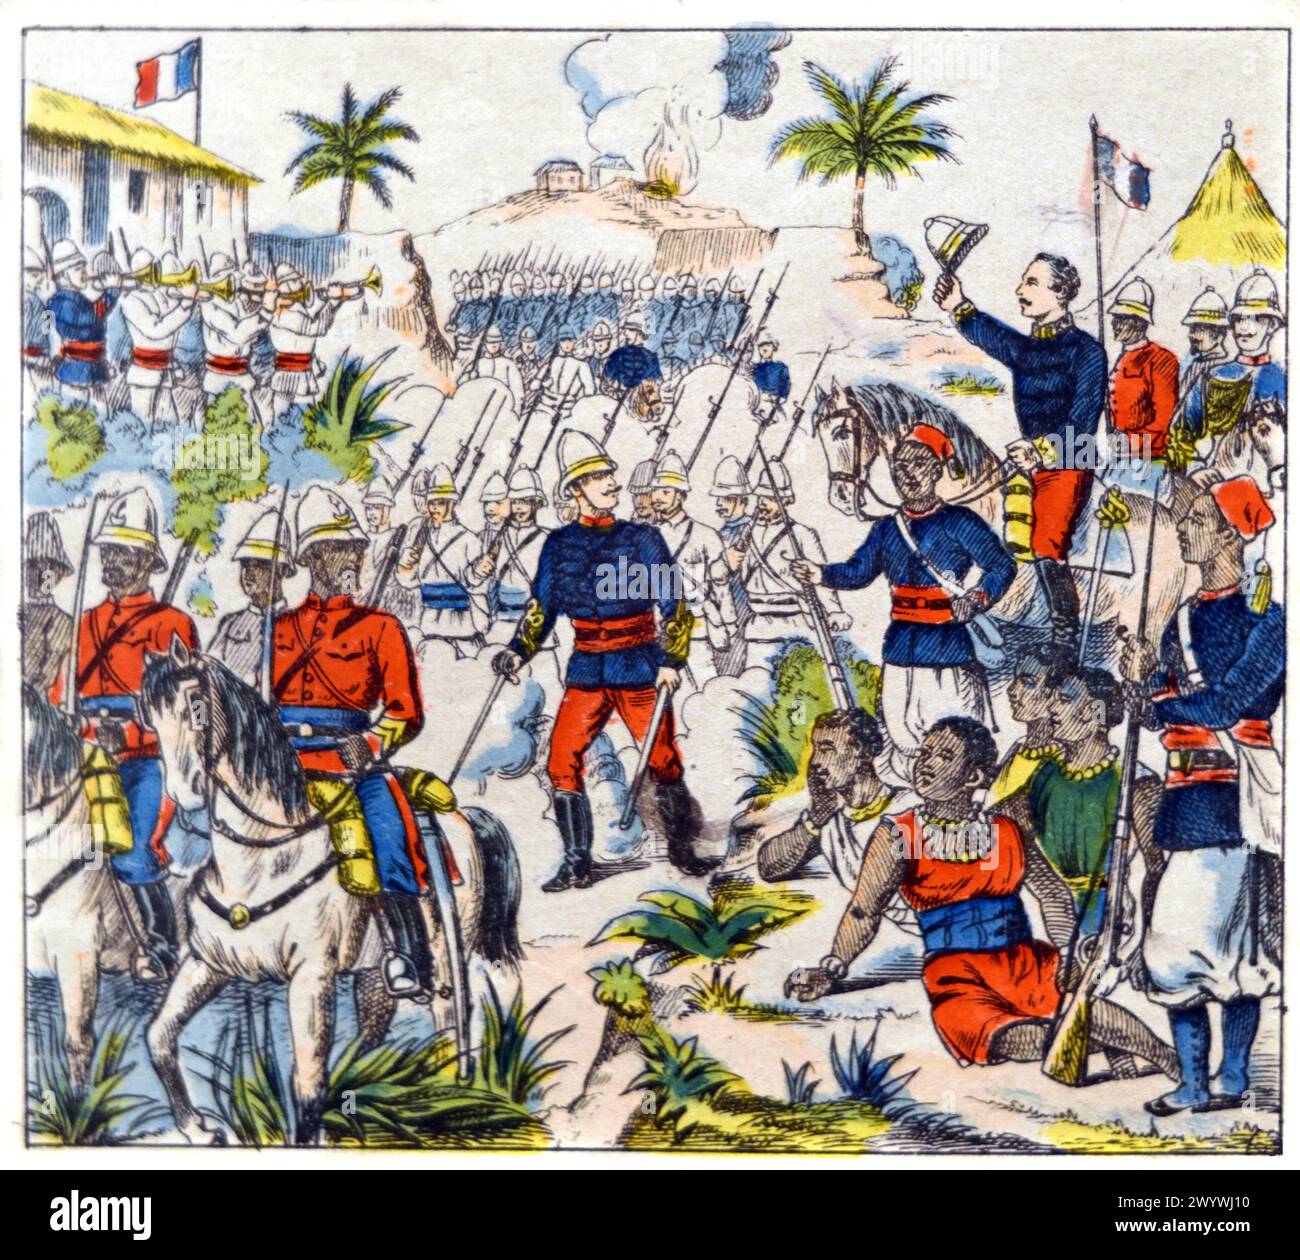 Les forces françaises capturent Abomey en novembre 1892, alors capitale du Royaume du Dahomey, aujourd'hui Bénin, Afrique de l'Ouest. Gravure ou illustration colorée vintage ou historique, début c20e Banque D'Images